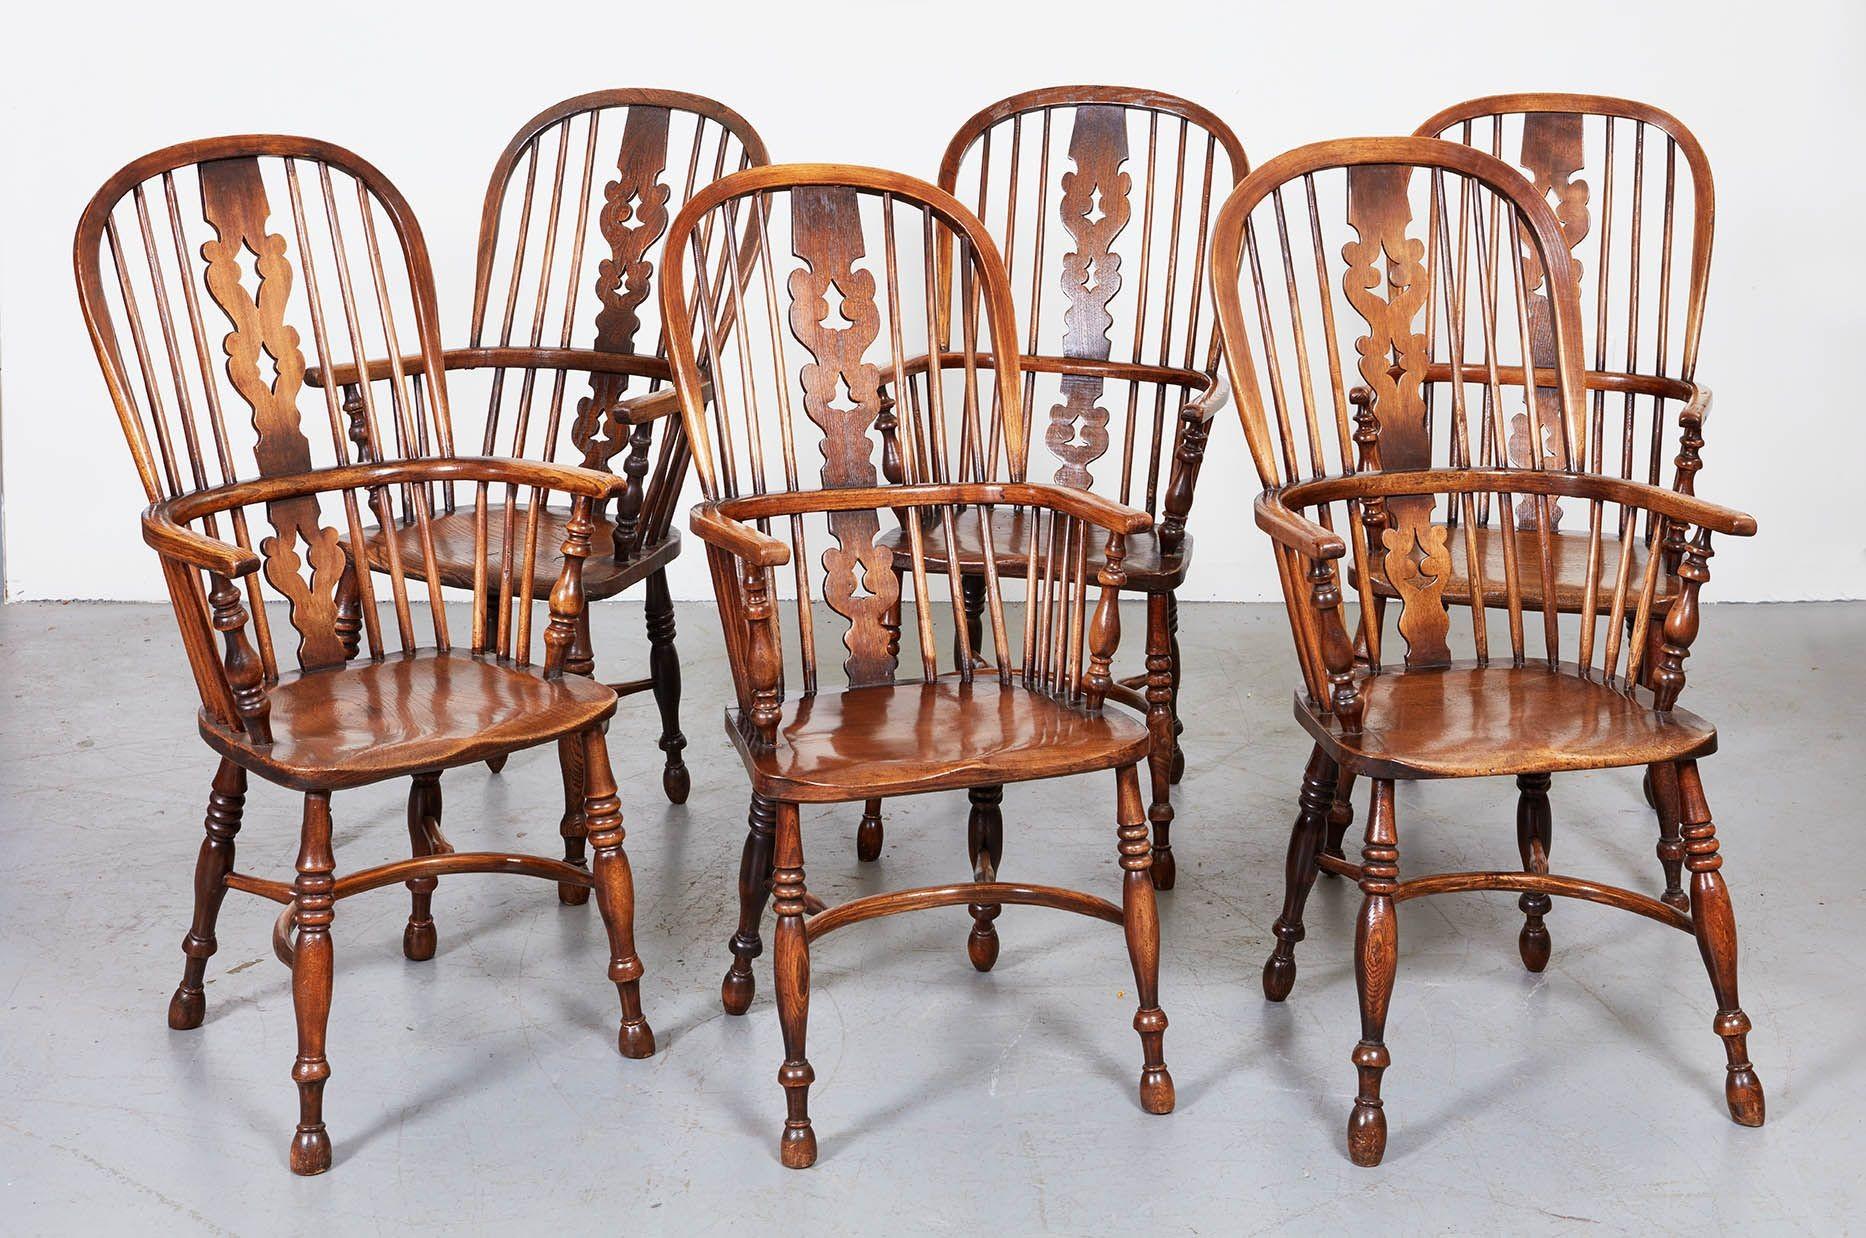 Six fauteuils Windsor à dossier arqué et accoudoirs continus d'une seule pièce, à dossier percé et fuseaux fixés à l'assise en planches, reposant sur des pieds tournés reliés par des brancards à crinoline courbés. Anglais, milieu du XIXe siècle.